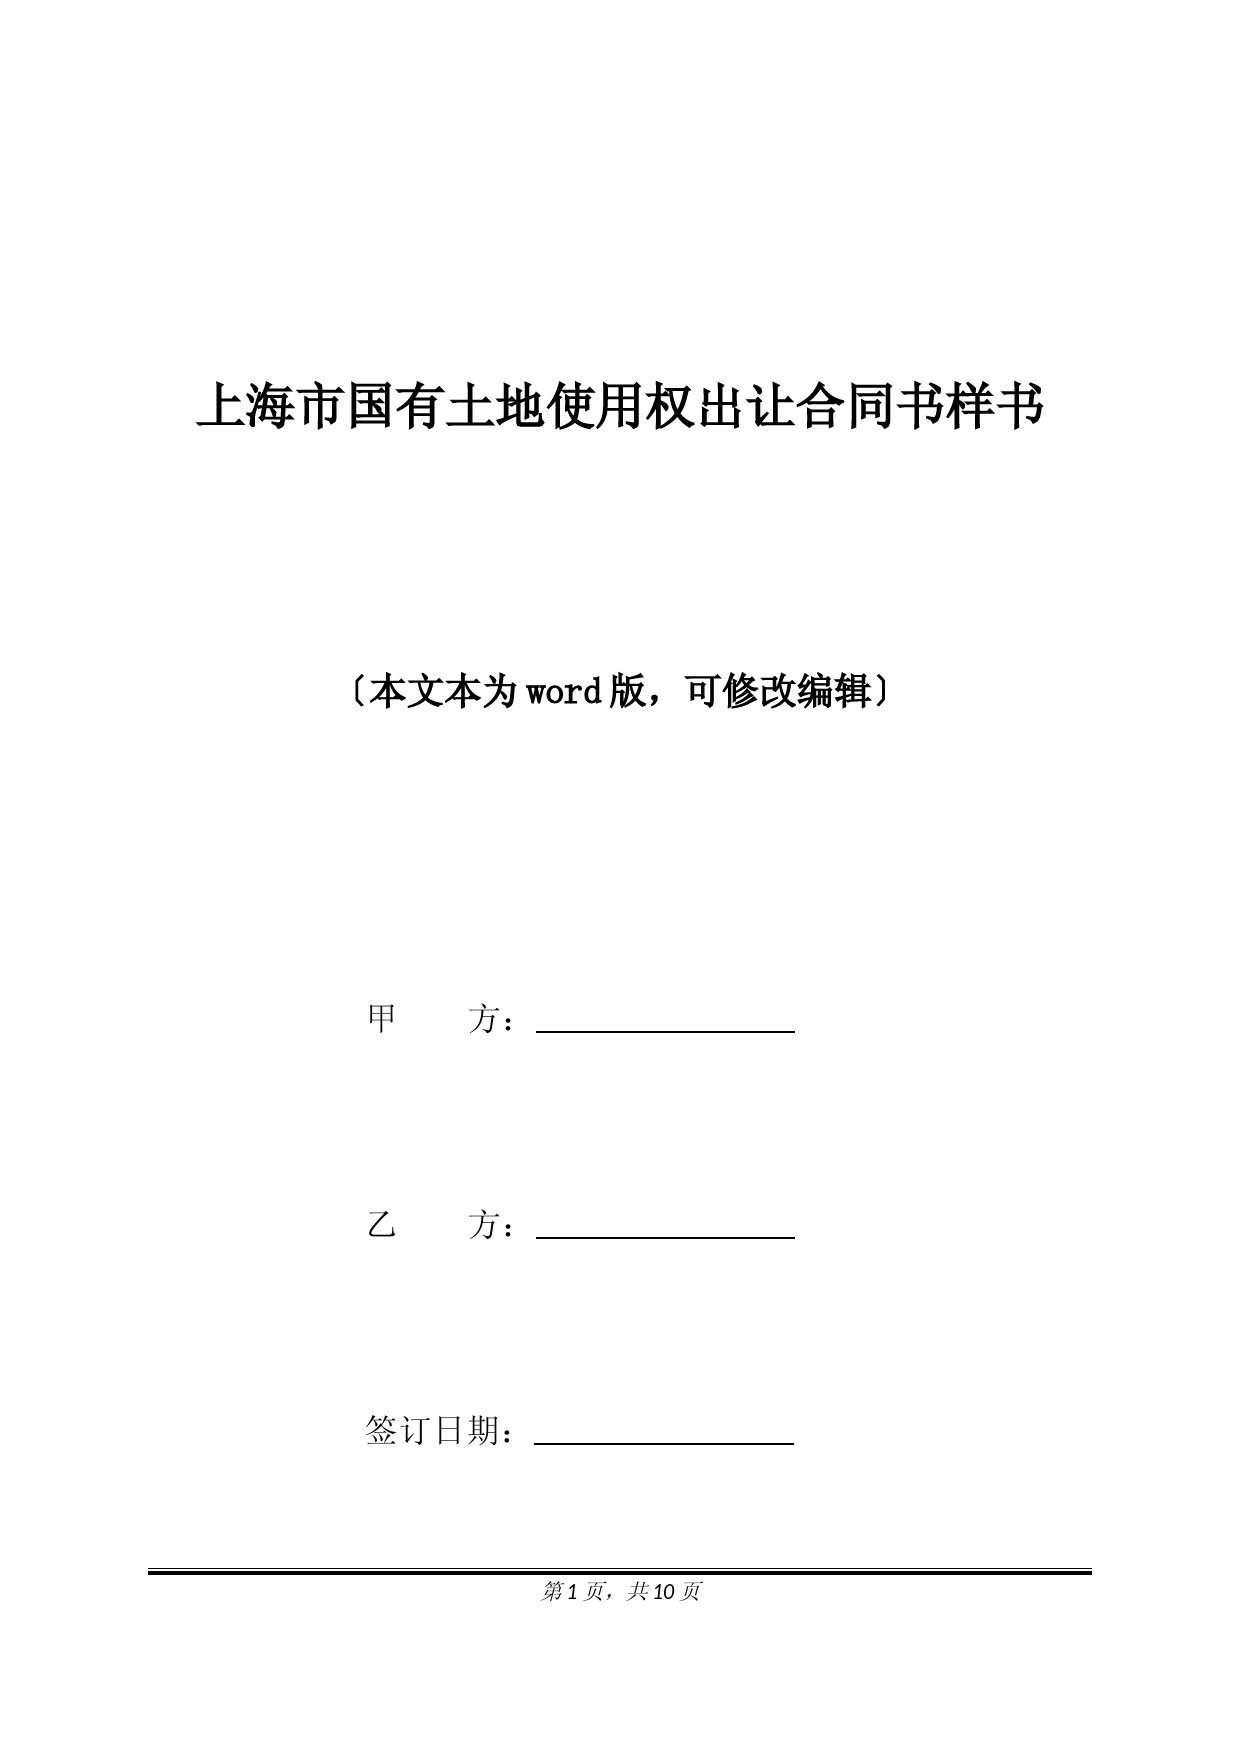 上海市国有土地使用权出让合同书样书(标准版).docx